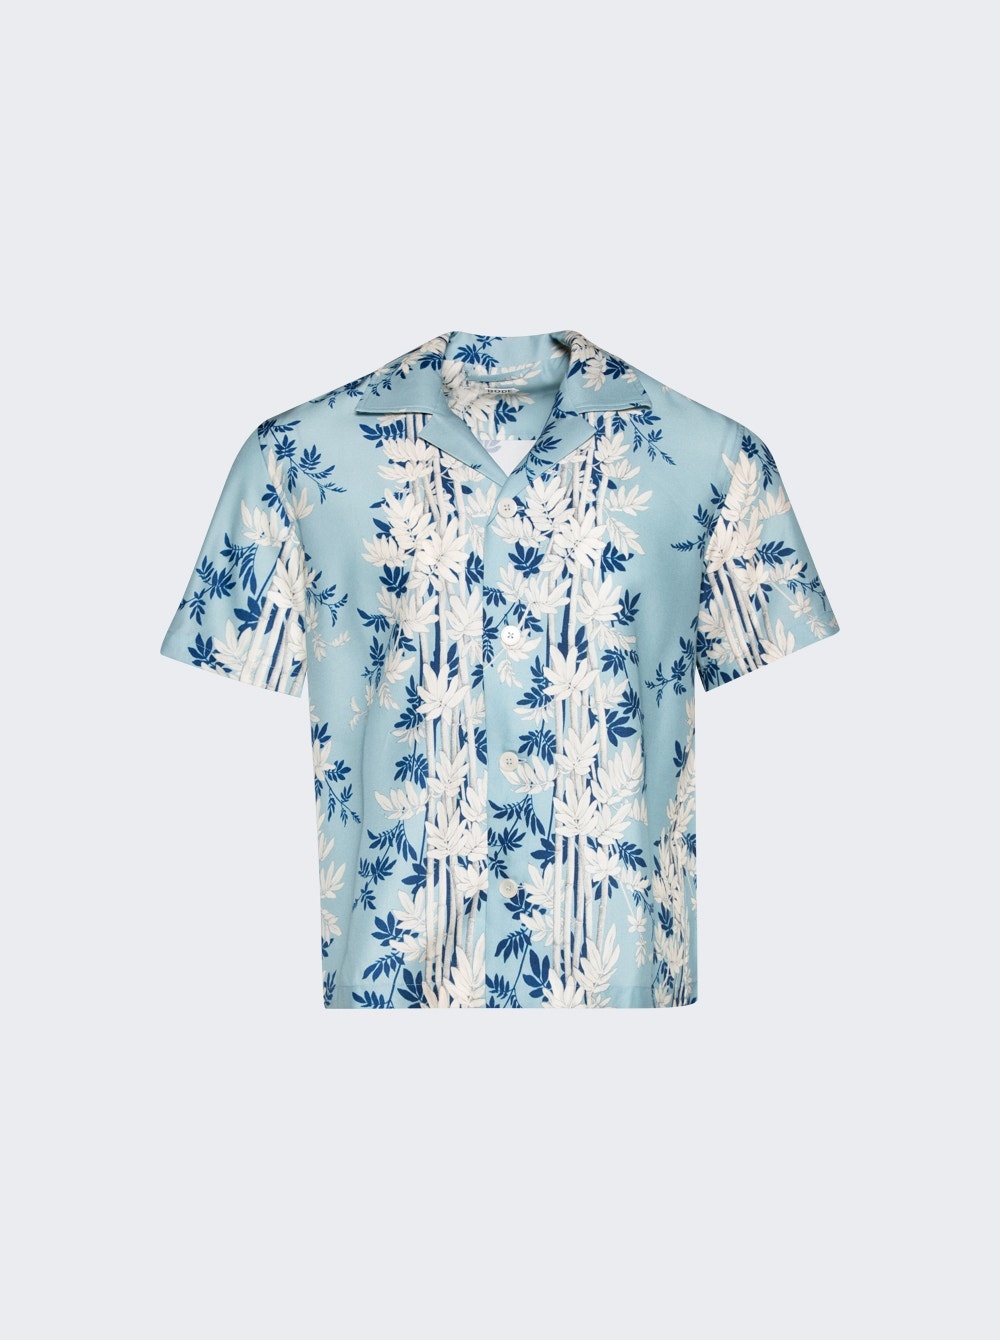 Bamboo Forest Short Sleeve Shirt Blue - 1